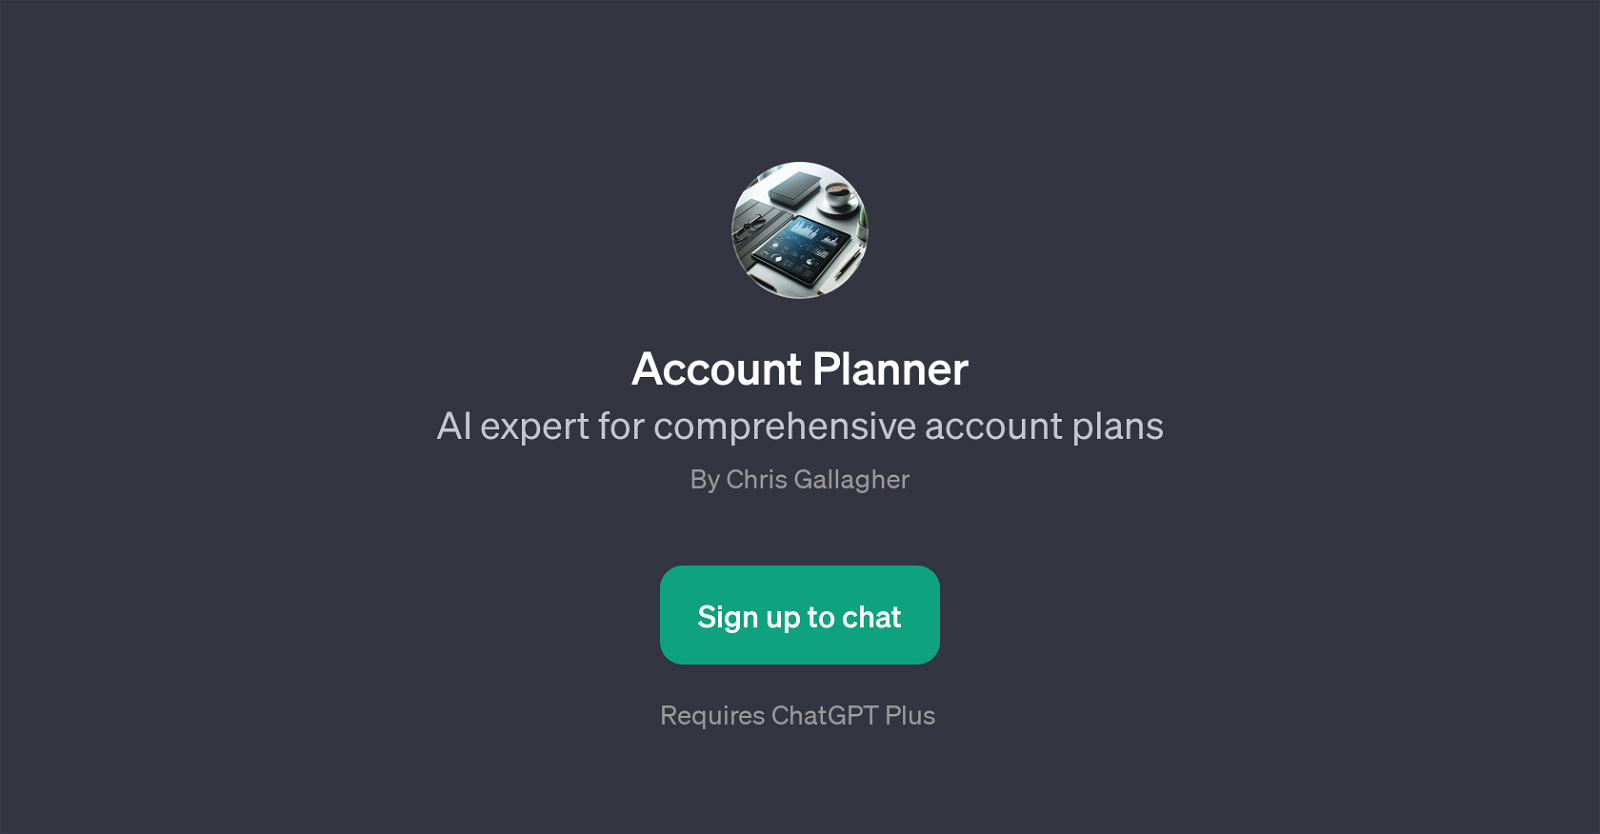 Account Planner website